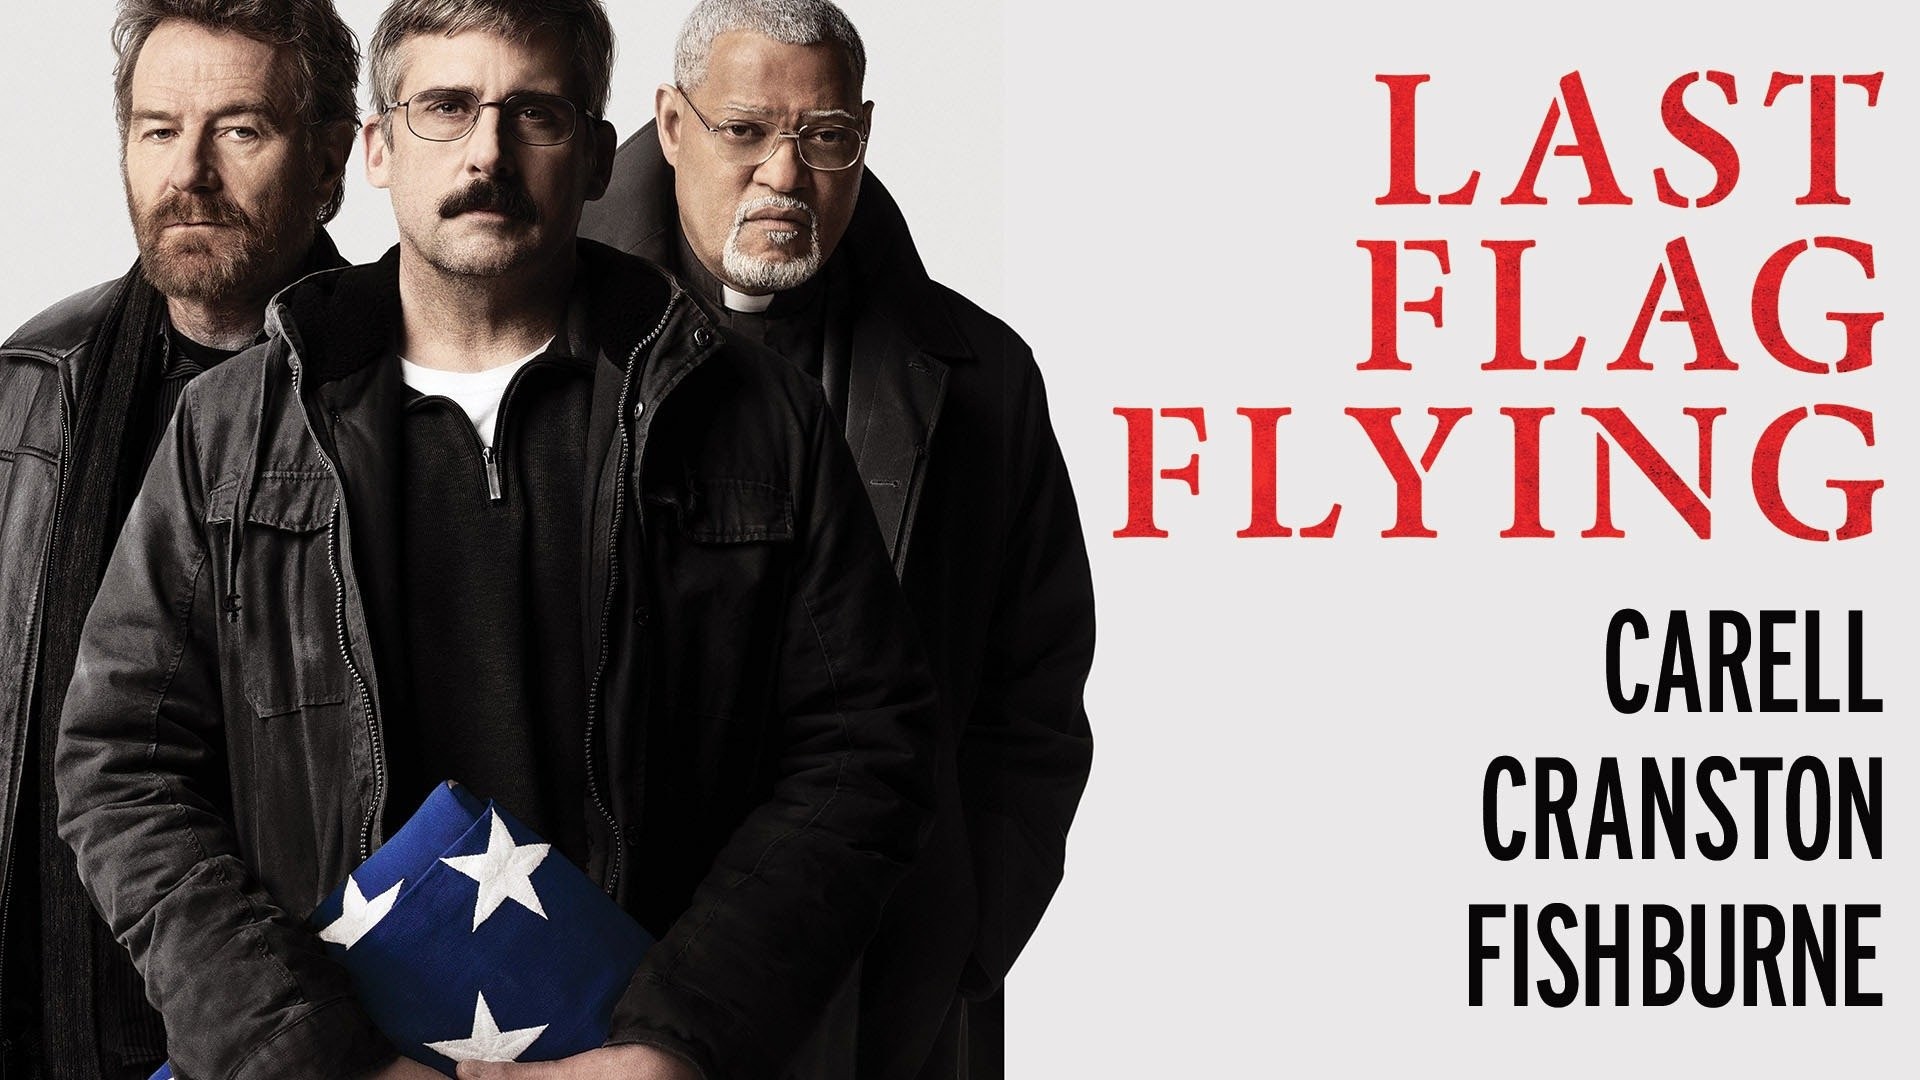 Last Flag Flying' Trailer: Linklater's Sequel 'The Last Detail